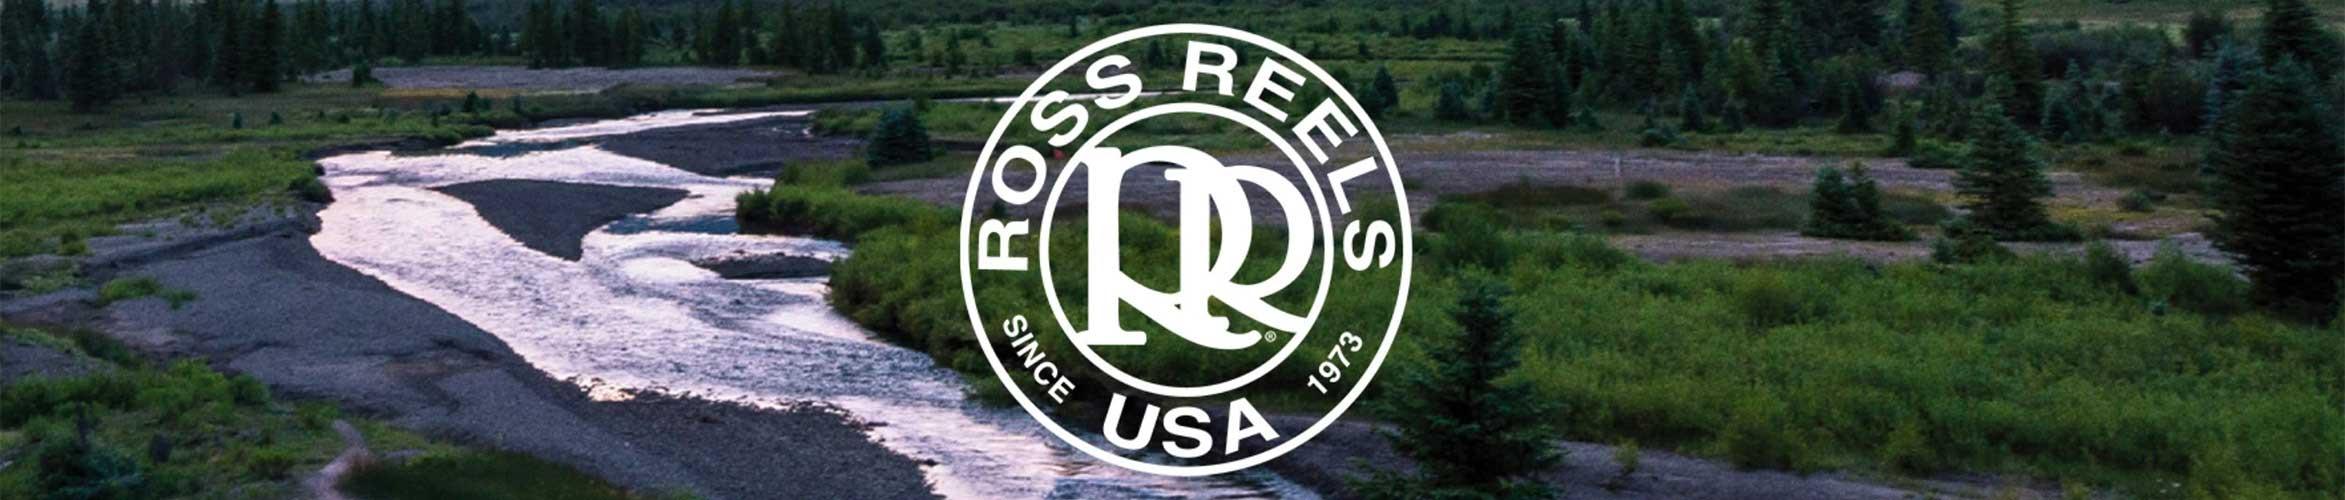 Ross Reels Brand Image Banner.